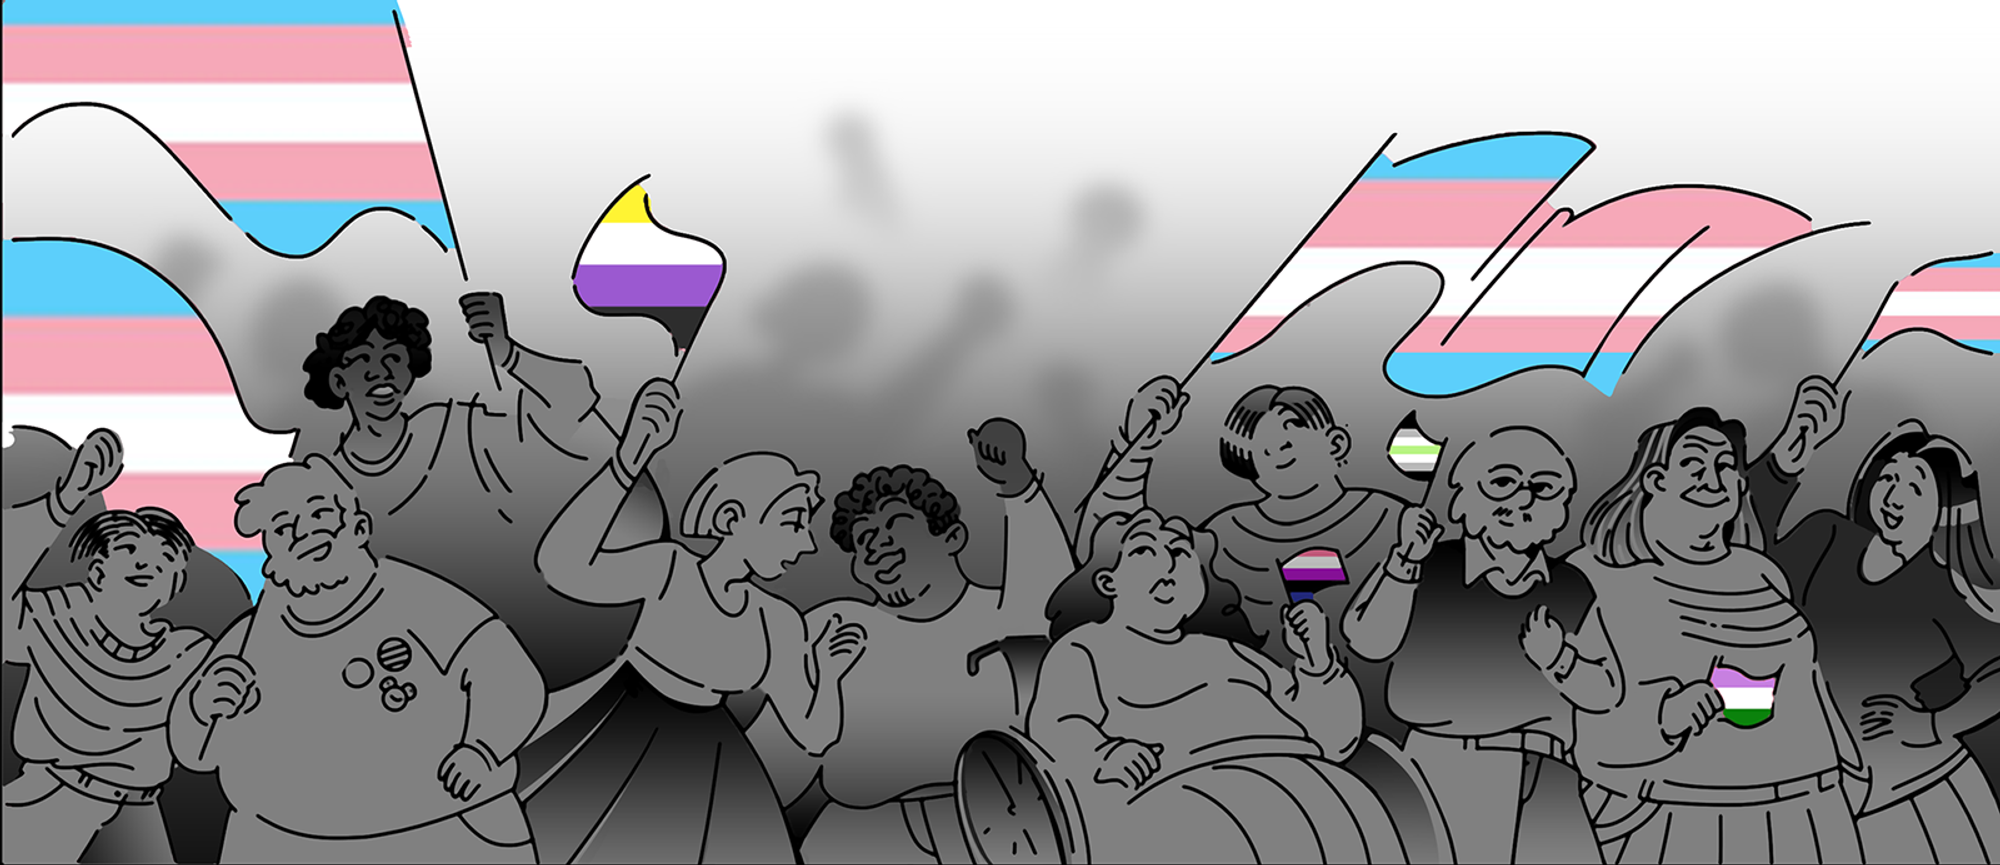 Трансляция: помогаем трансгендерным и небинарным людям в России